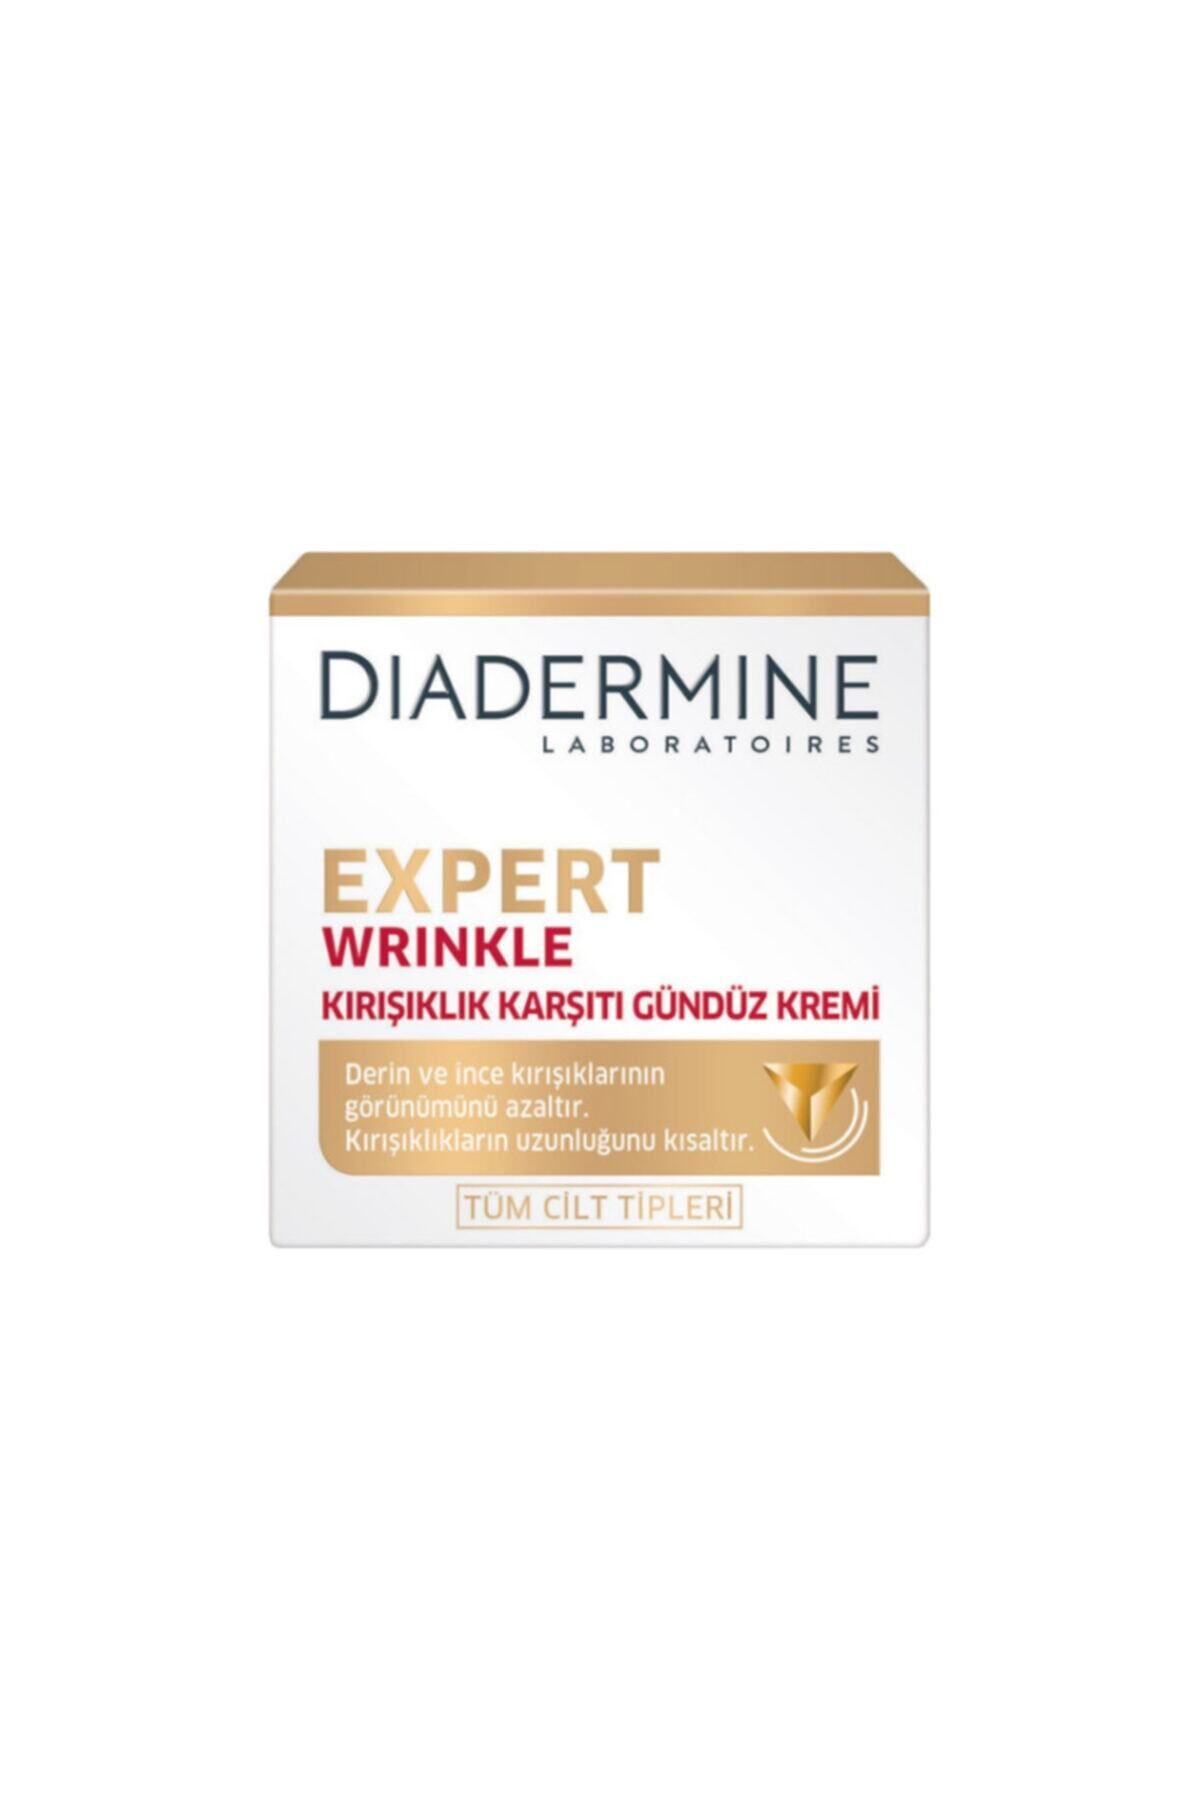 Diadermine Expert Wrinkle Kırışıklık Karşıtı Gündüz Kremi 50 ml